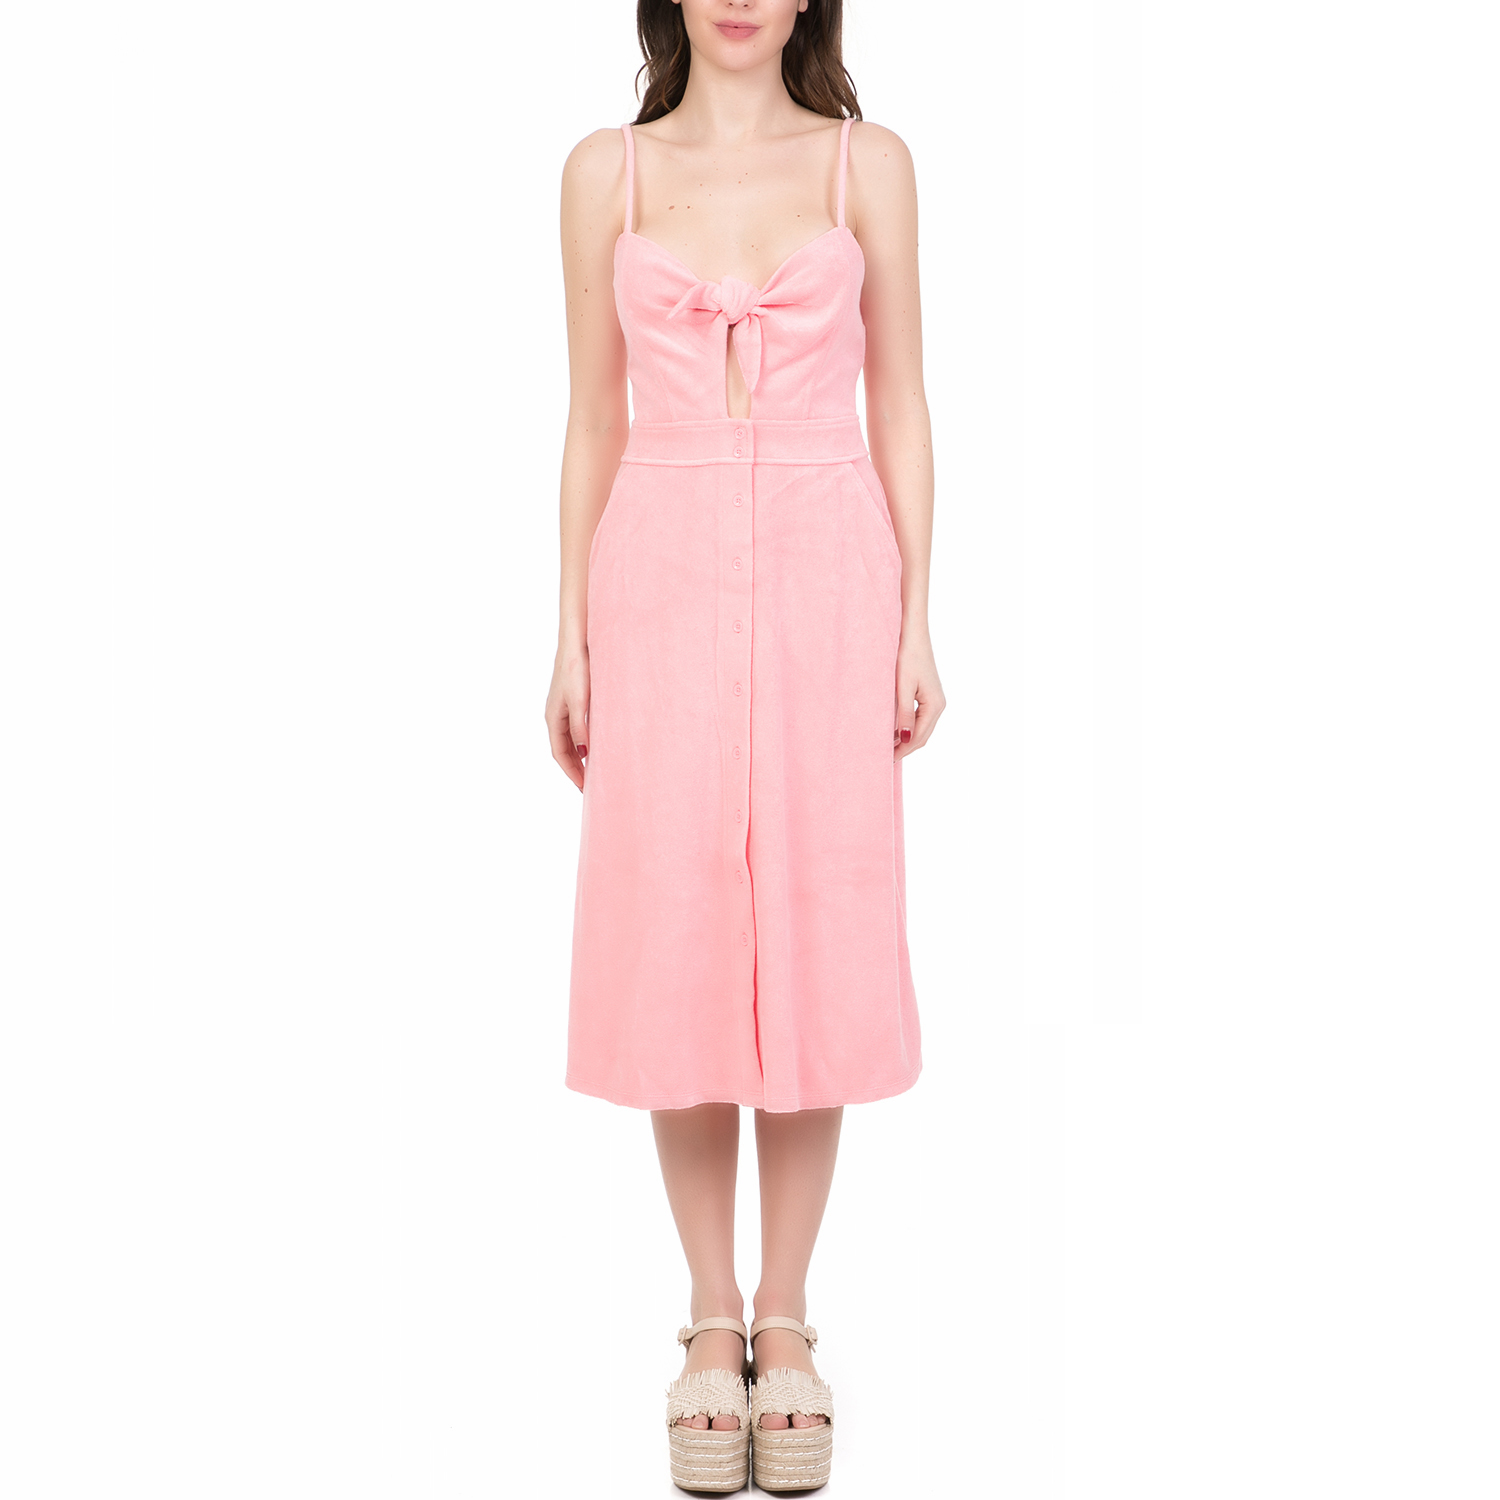 Γυναικεία/Ρούχα/Φορέματα/Μέχρι το γόνατο JUICY COUTURE - Γυναικείο midi φόρεμα MICROTERRY TIE FRONT JUICY COUTURE ροζ